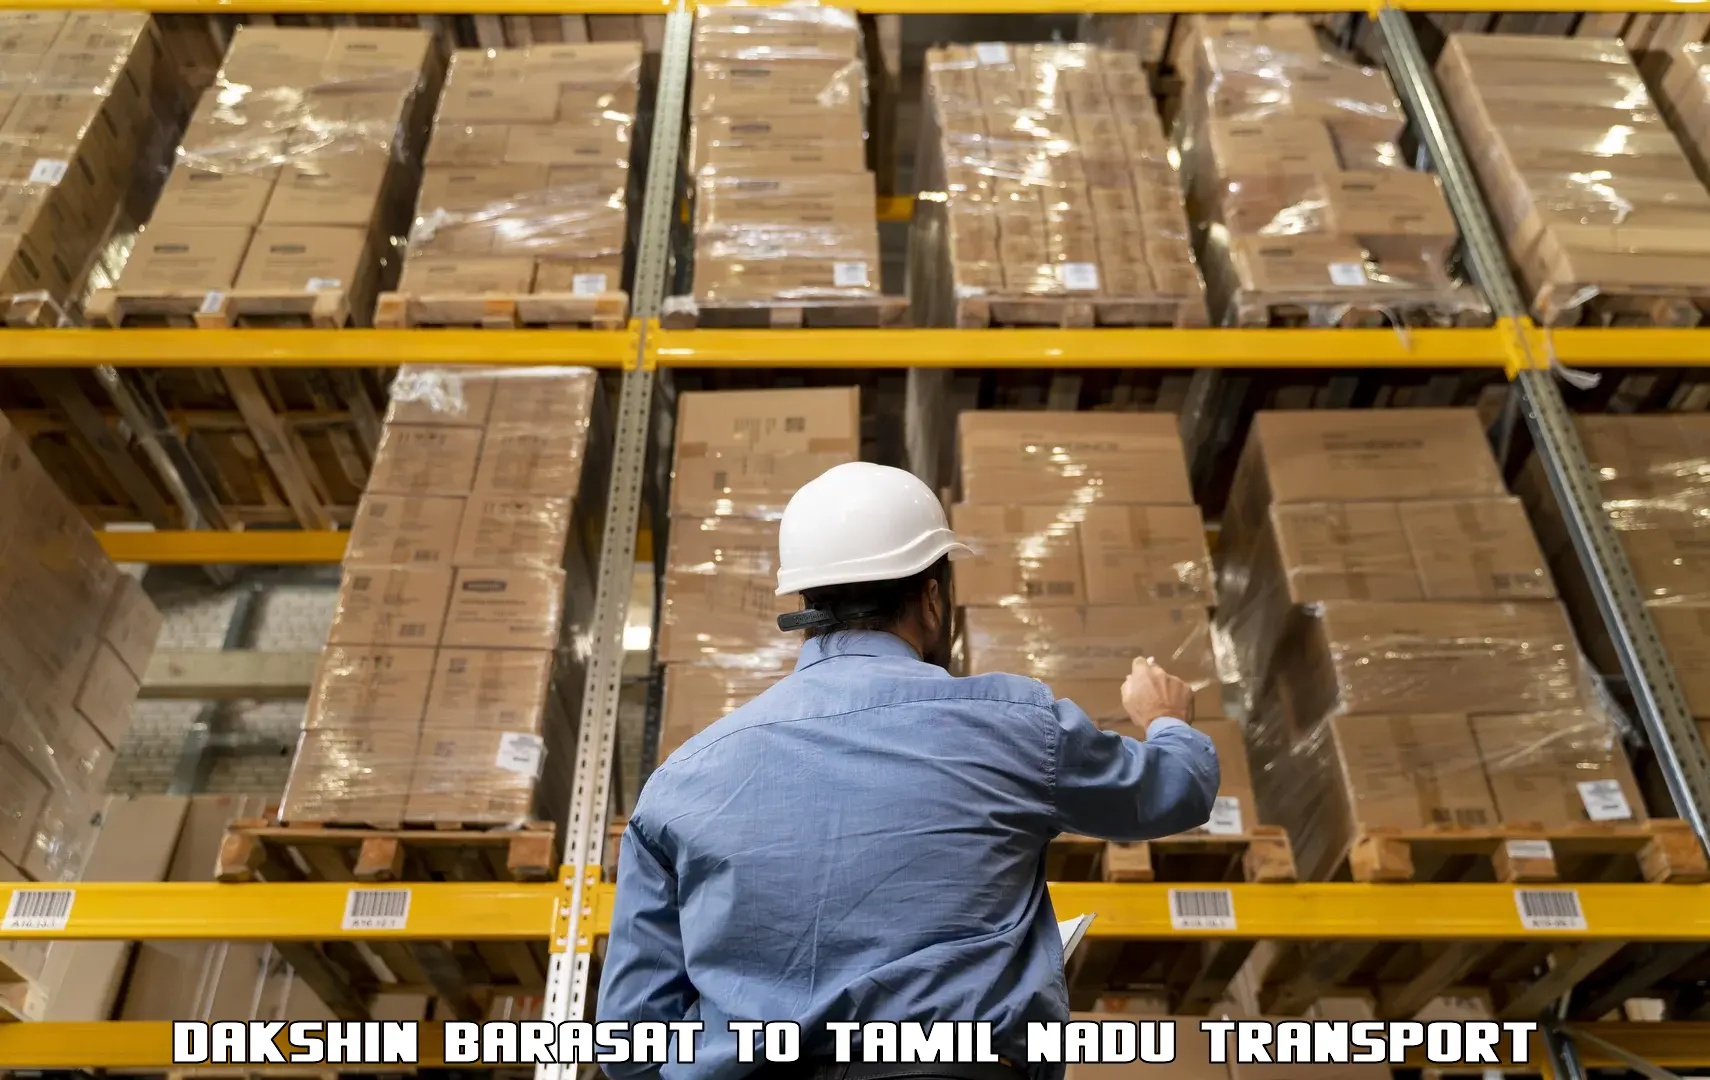 Transport in sharing Dakshin Barasat to Chennai Port